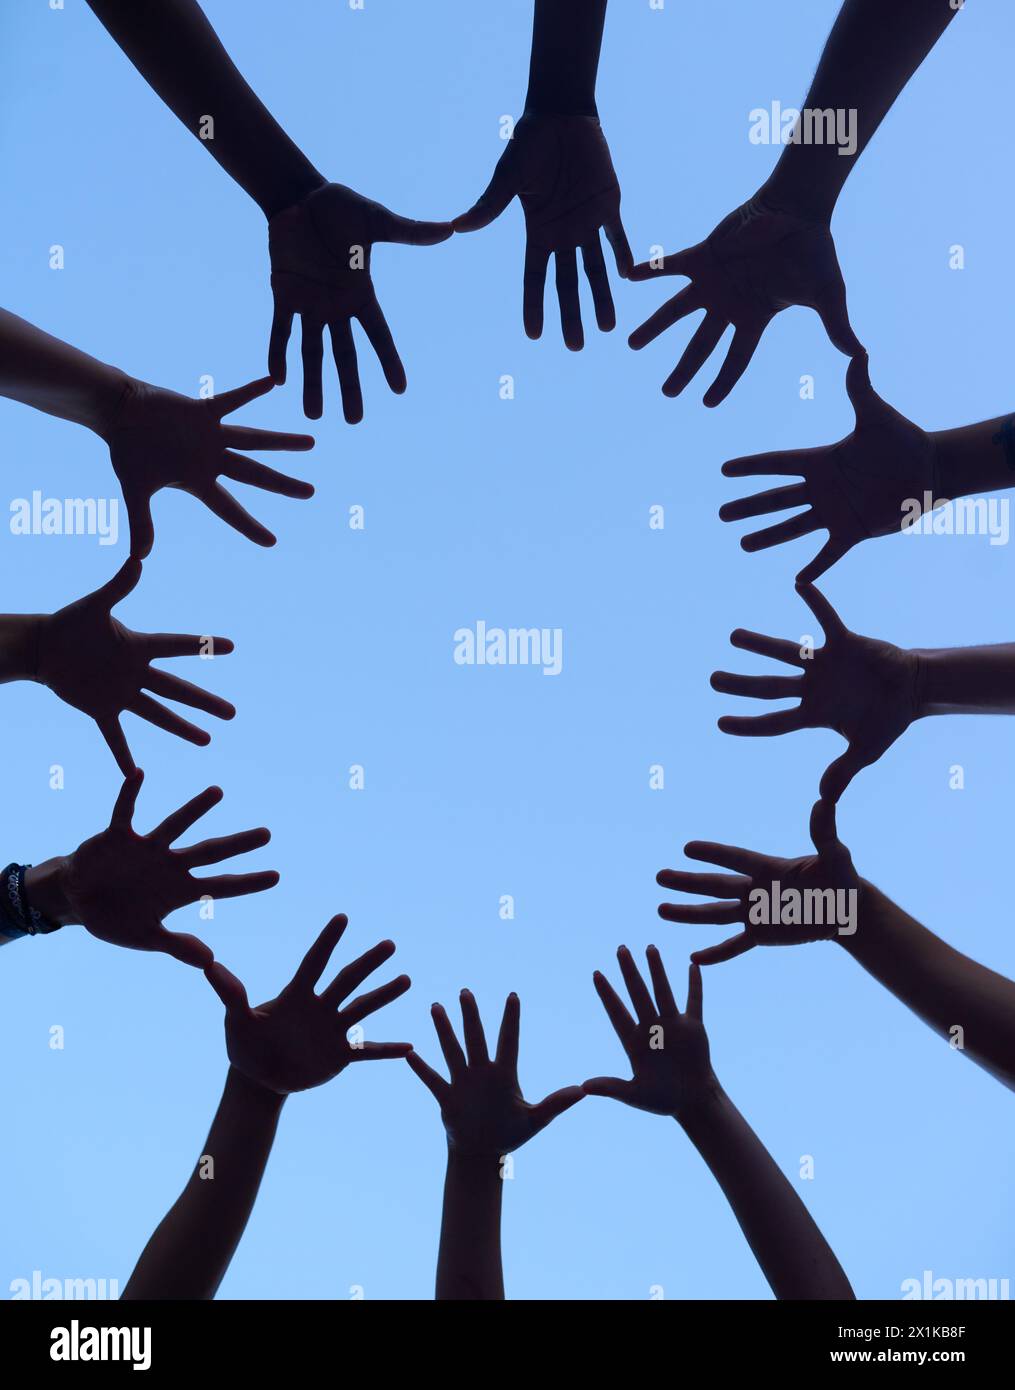 Hände, Gruppe und Silhouette für Unterstützung beim Zusammenrücken, geringer Winkel für Zusammenarbeit bei Teambildung und Menschen im Freien. Partnerschaft, Solidarität und Gemeinschaft Stockfoto